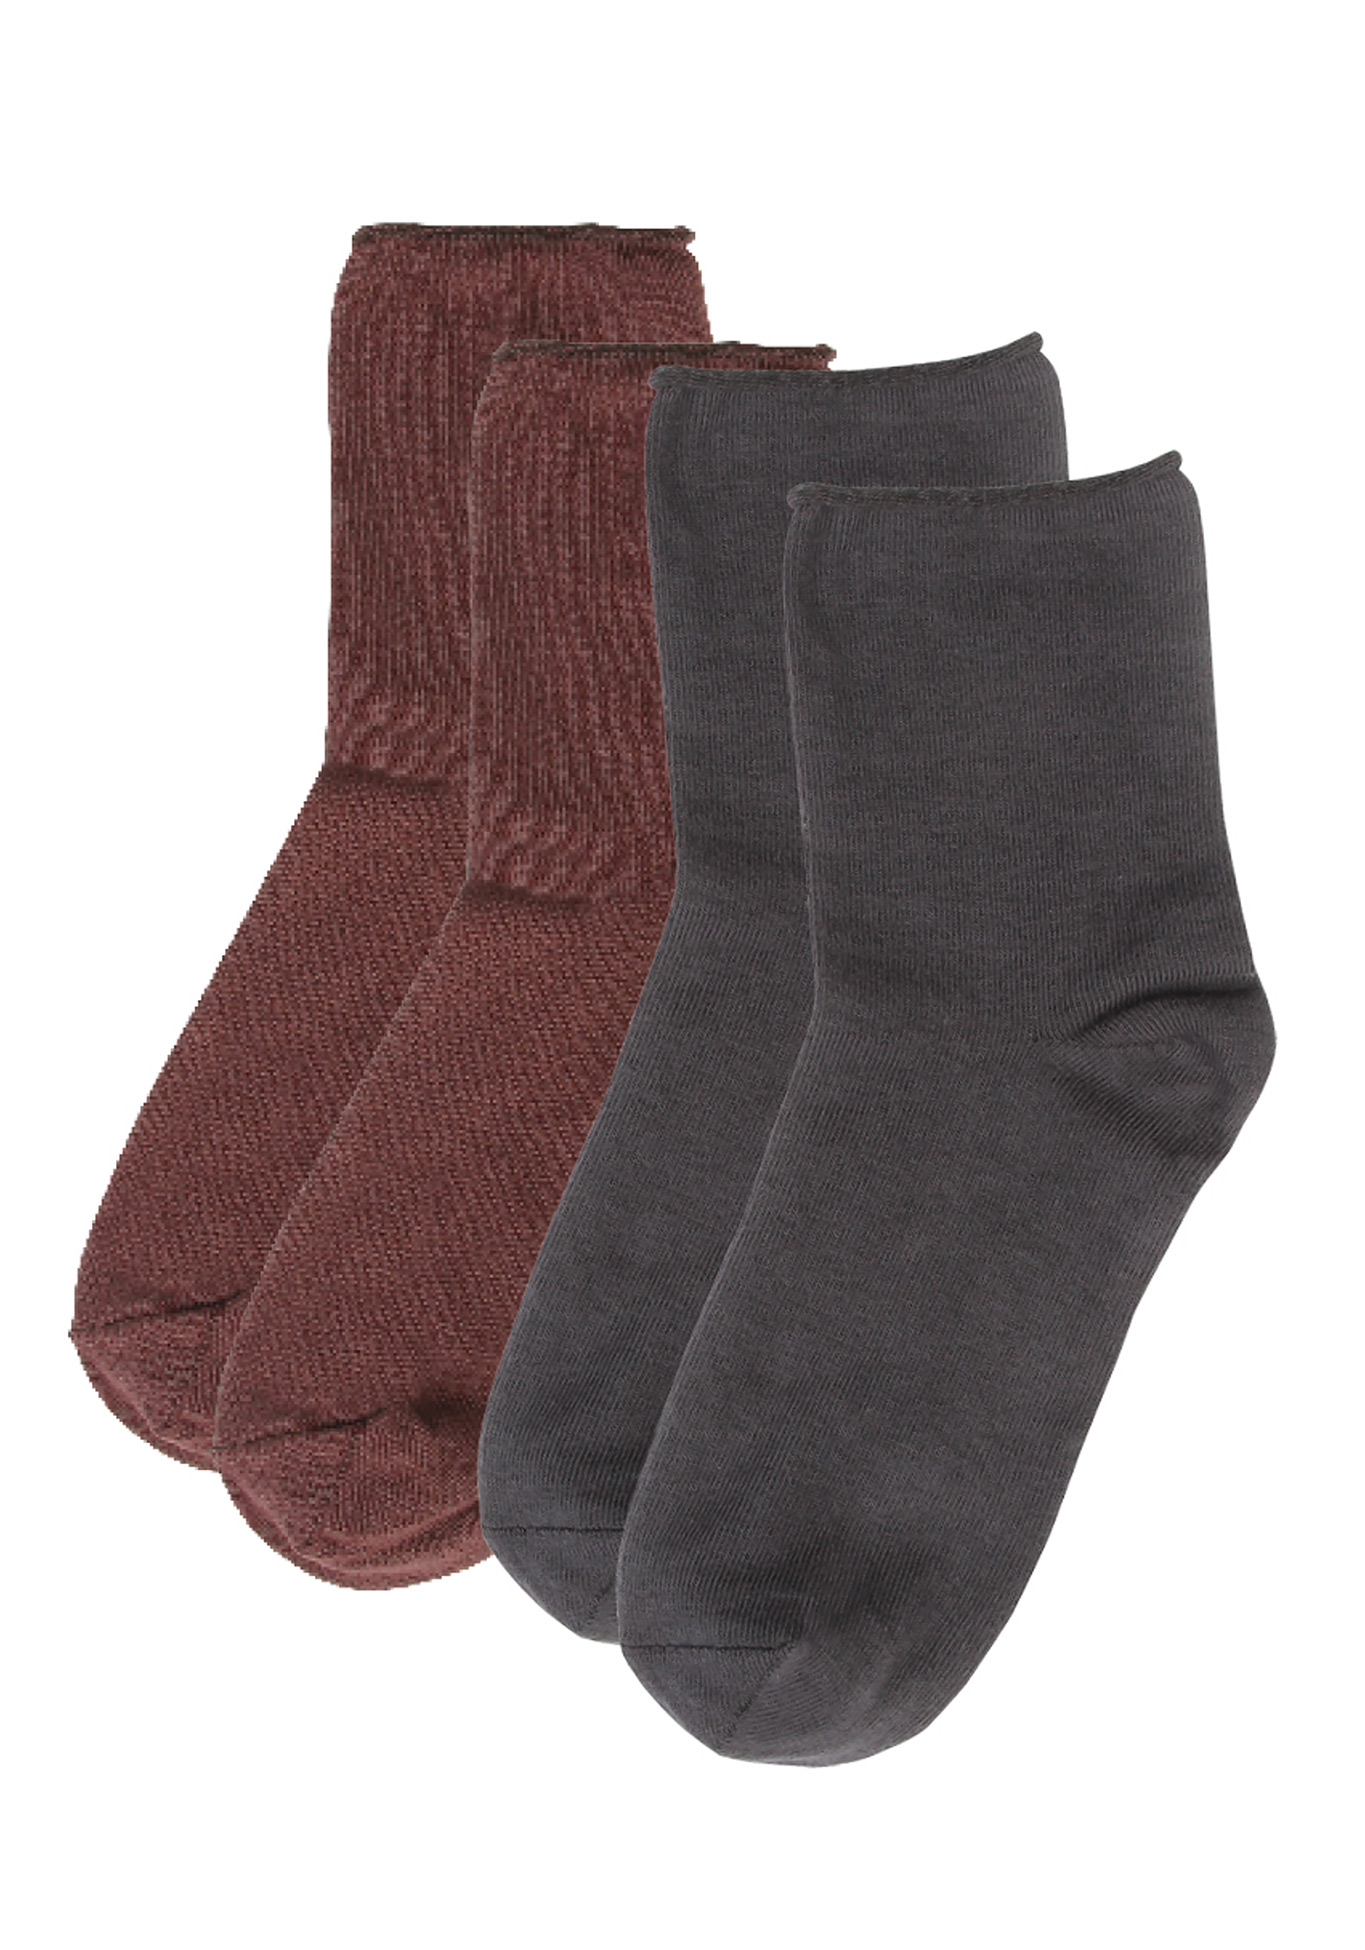 Специальные носки без резинки «Комфорт», цвет светло-серый+черный, размер 35-37 - фото 3